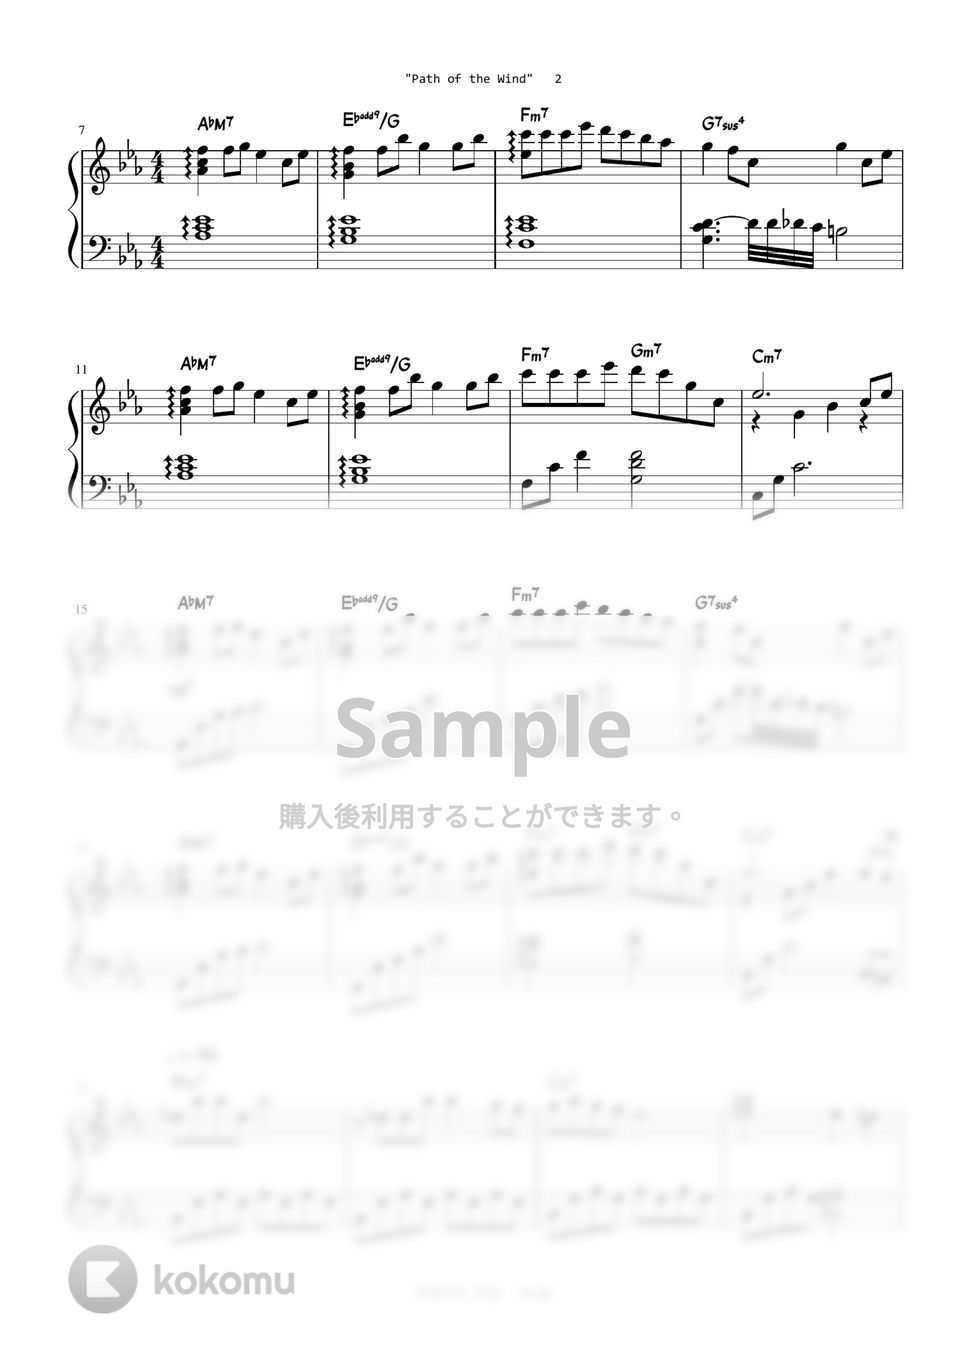 となりのトトロ - 風のとおり道 (Level 2 - Original Key) by A.Ha